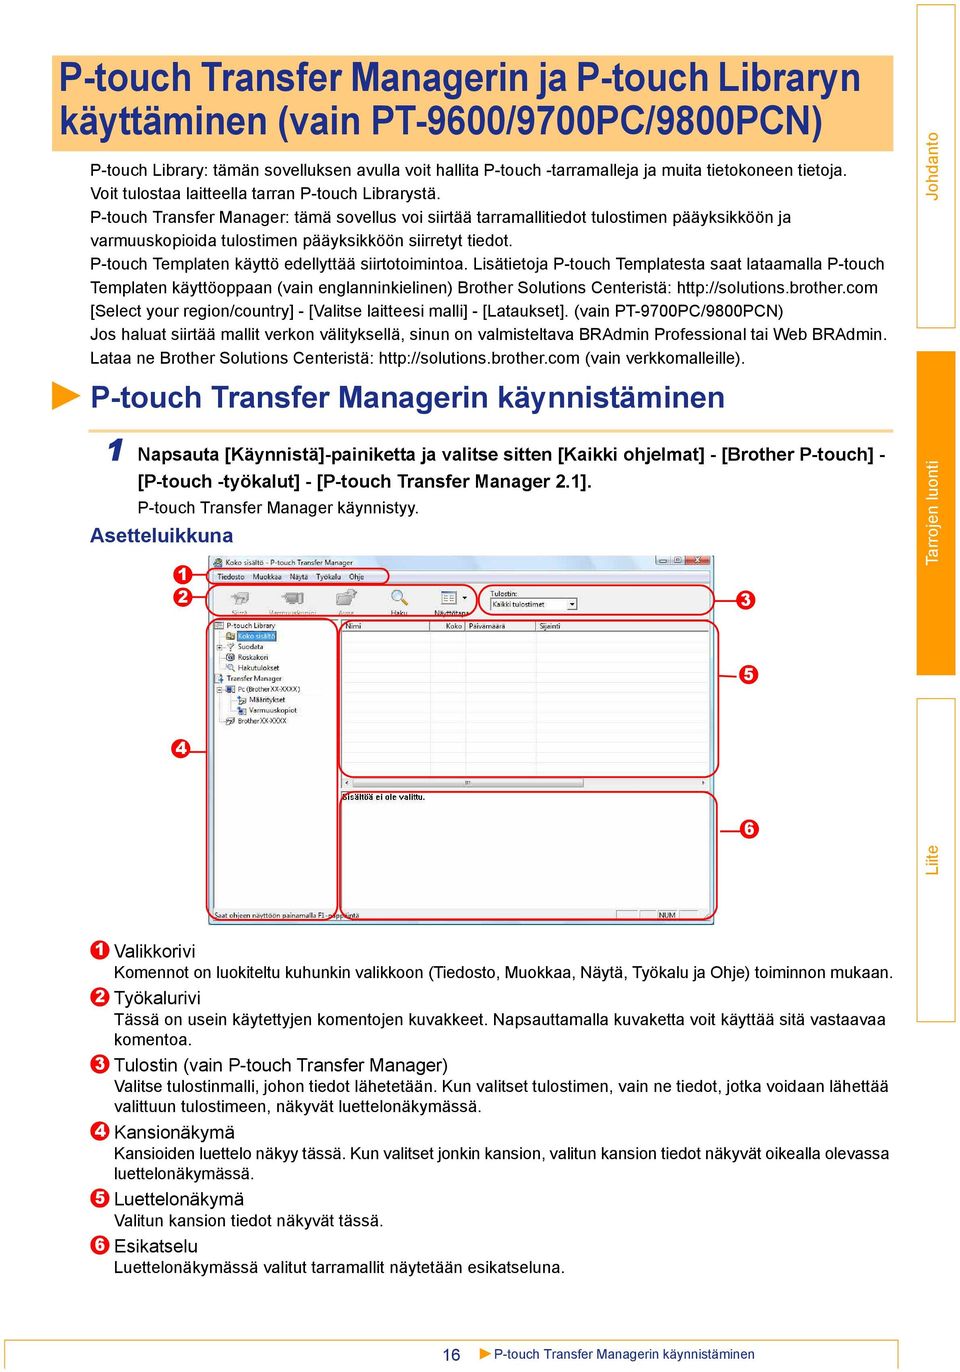 P-touch Transfer Manager: tämä sovellus voi siirtää tarramallitiedot tulostimen pääyksikköön ja varmuuskopioida tulostimen pääyksikköön siirretyt tiedot.